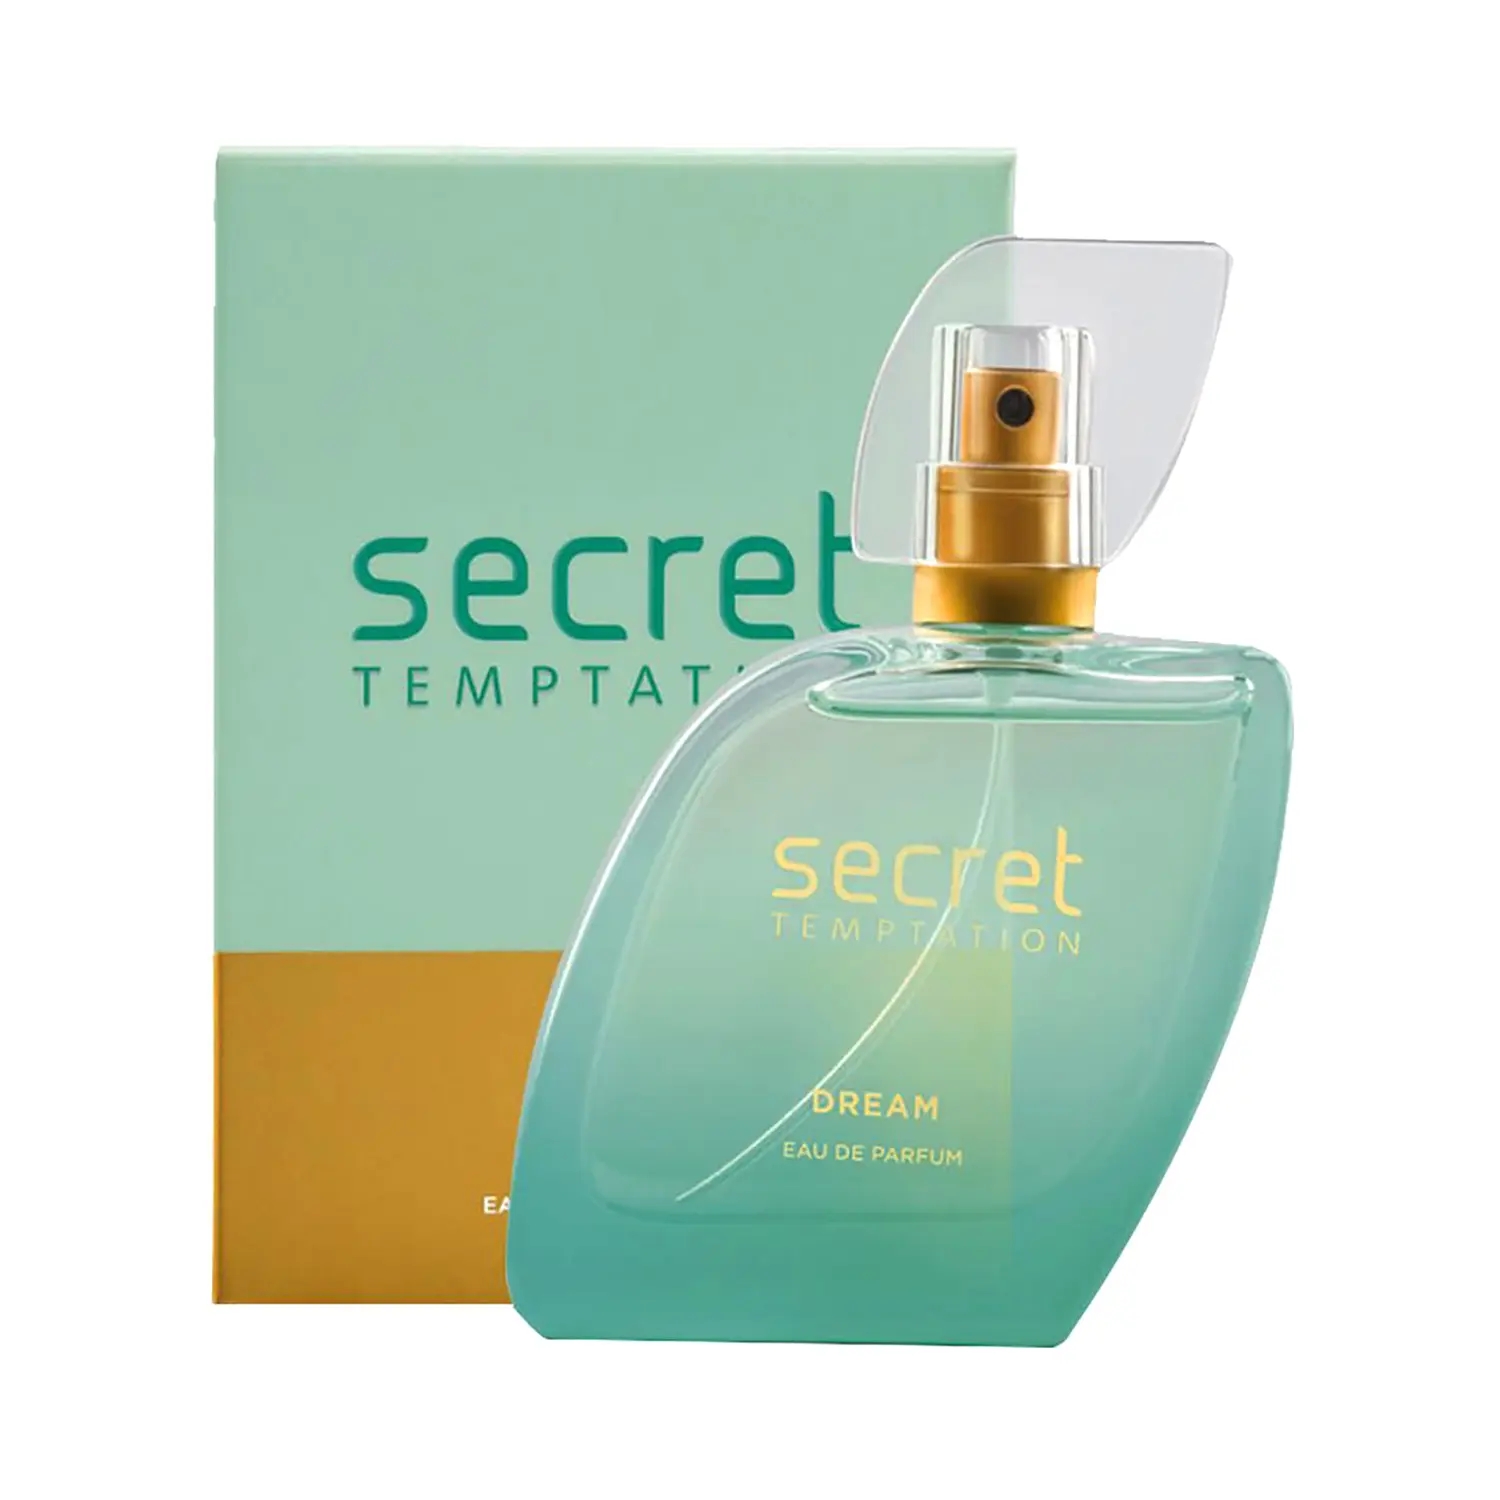 Secret Temptation | Secret Temptation Dream Eau De Parfum (50ml)